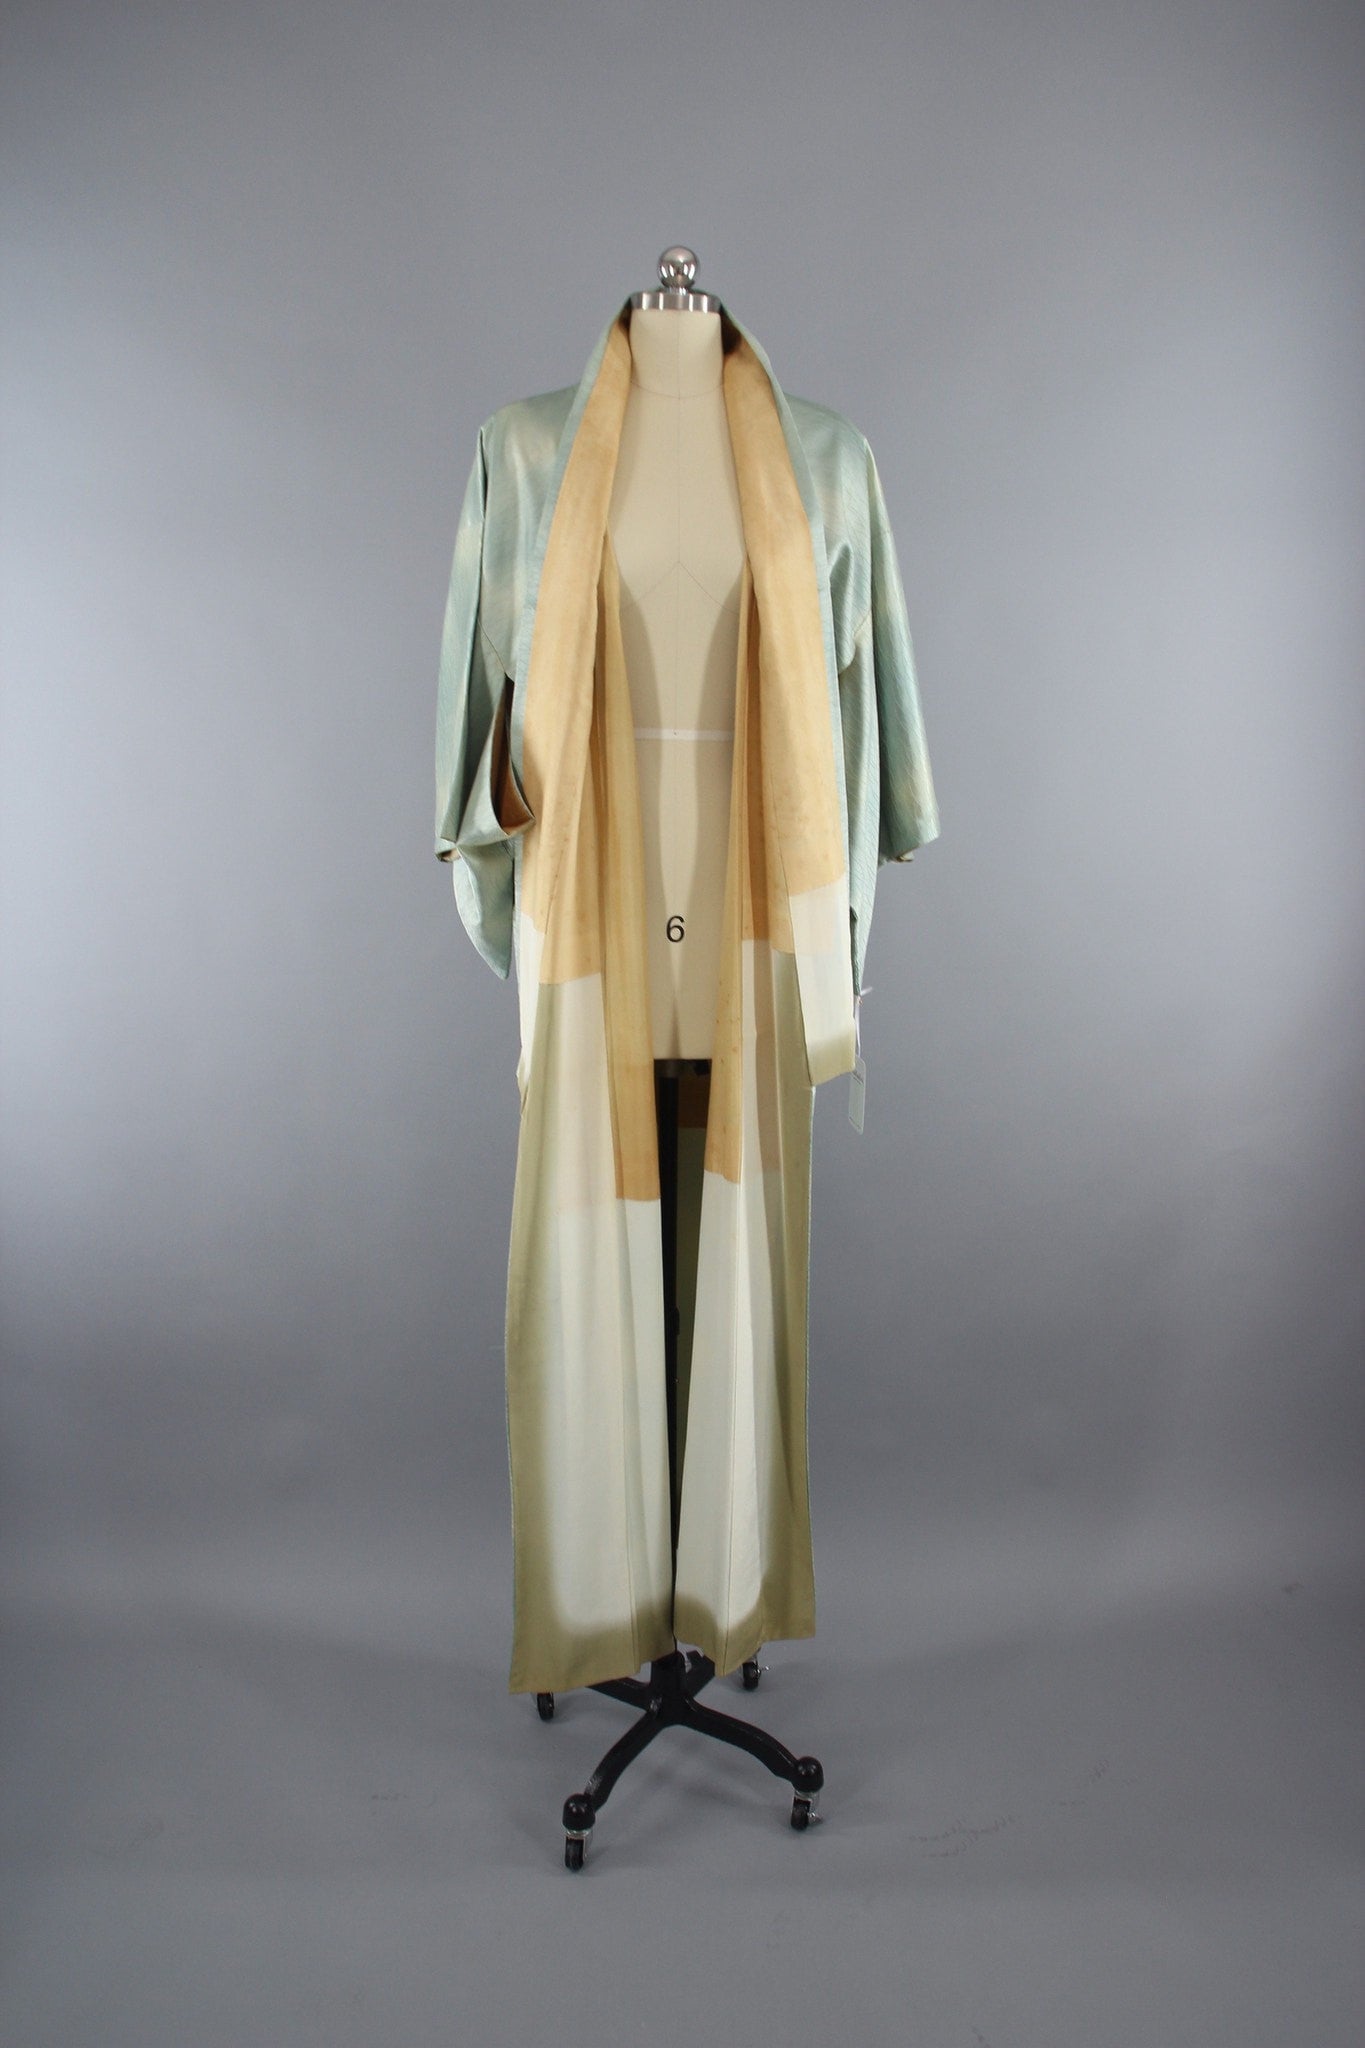 1960s Vintage Silk Kimono Robe in Sea Foam Green Ombre Satin - ThisBlueBird